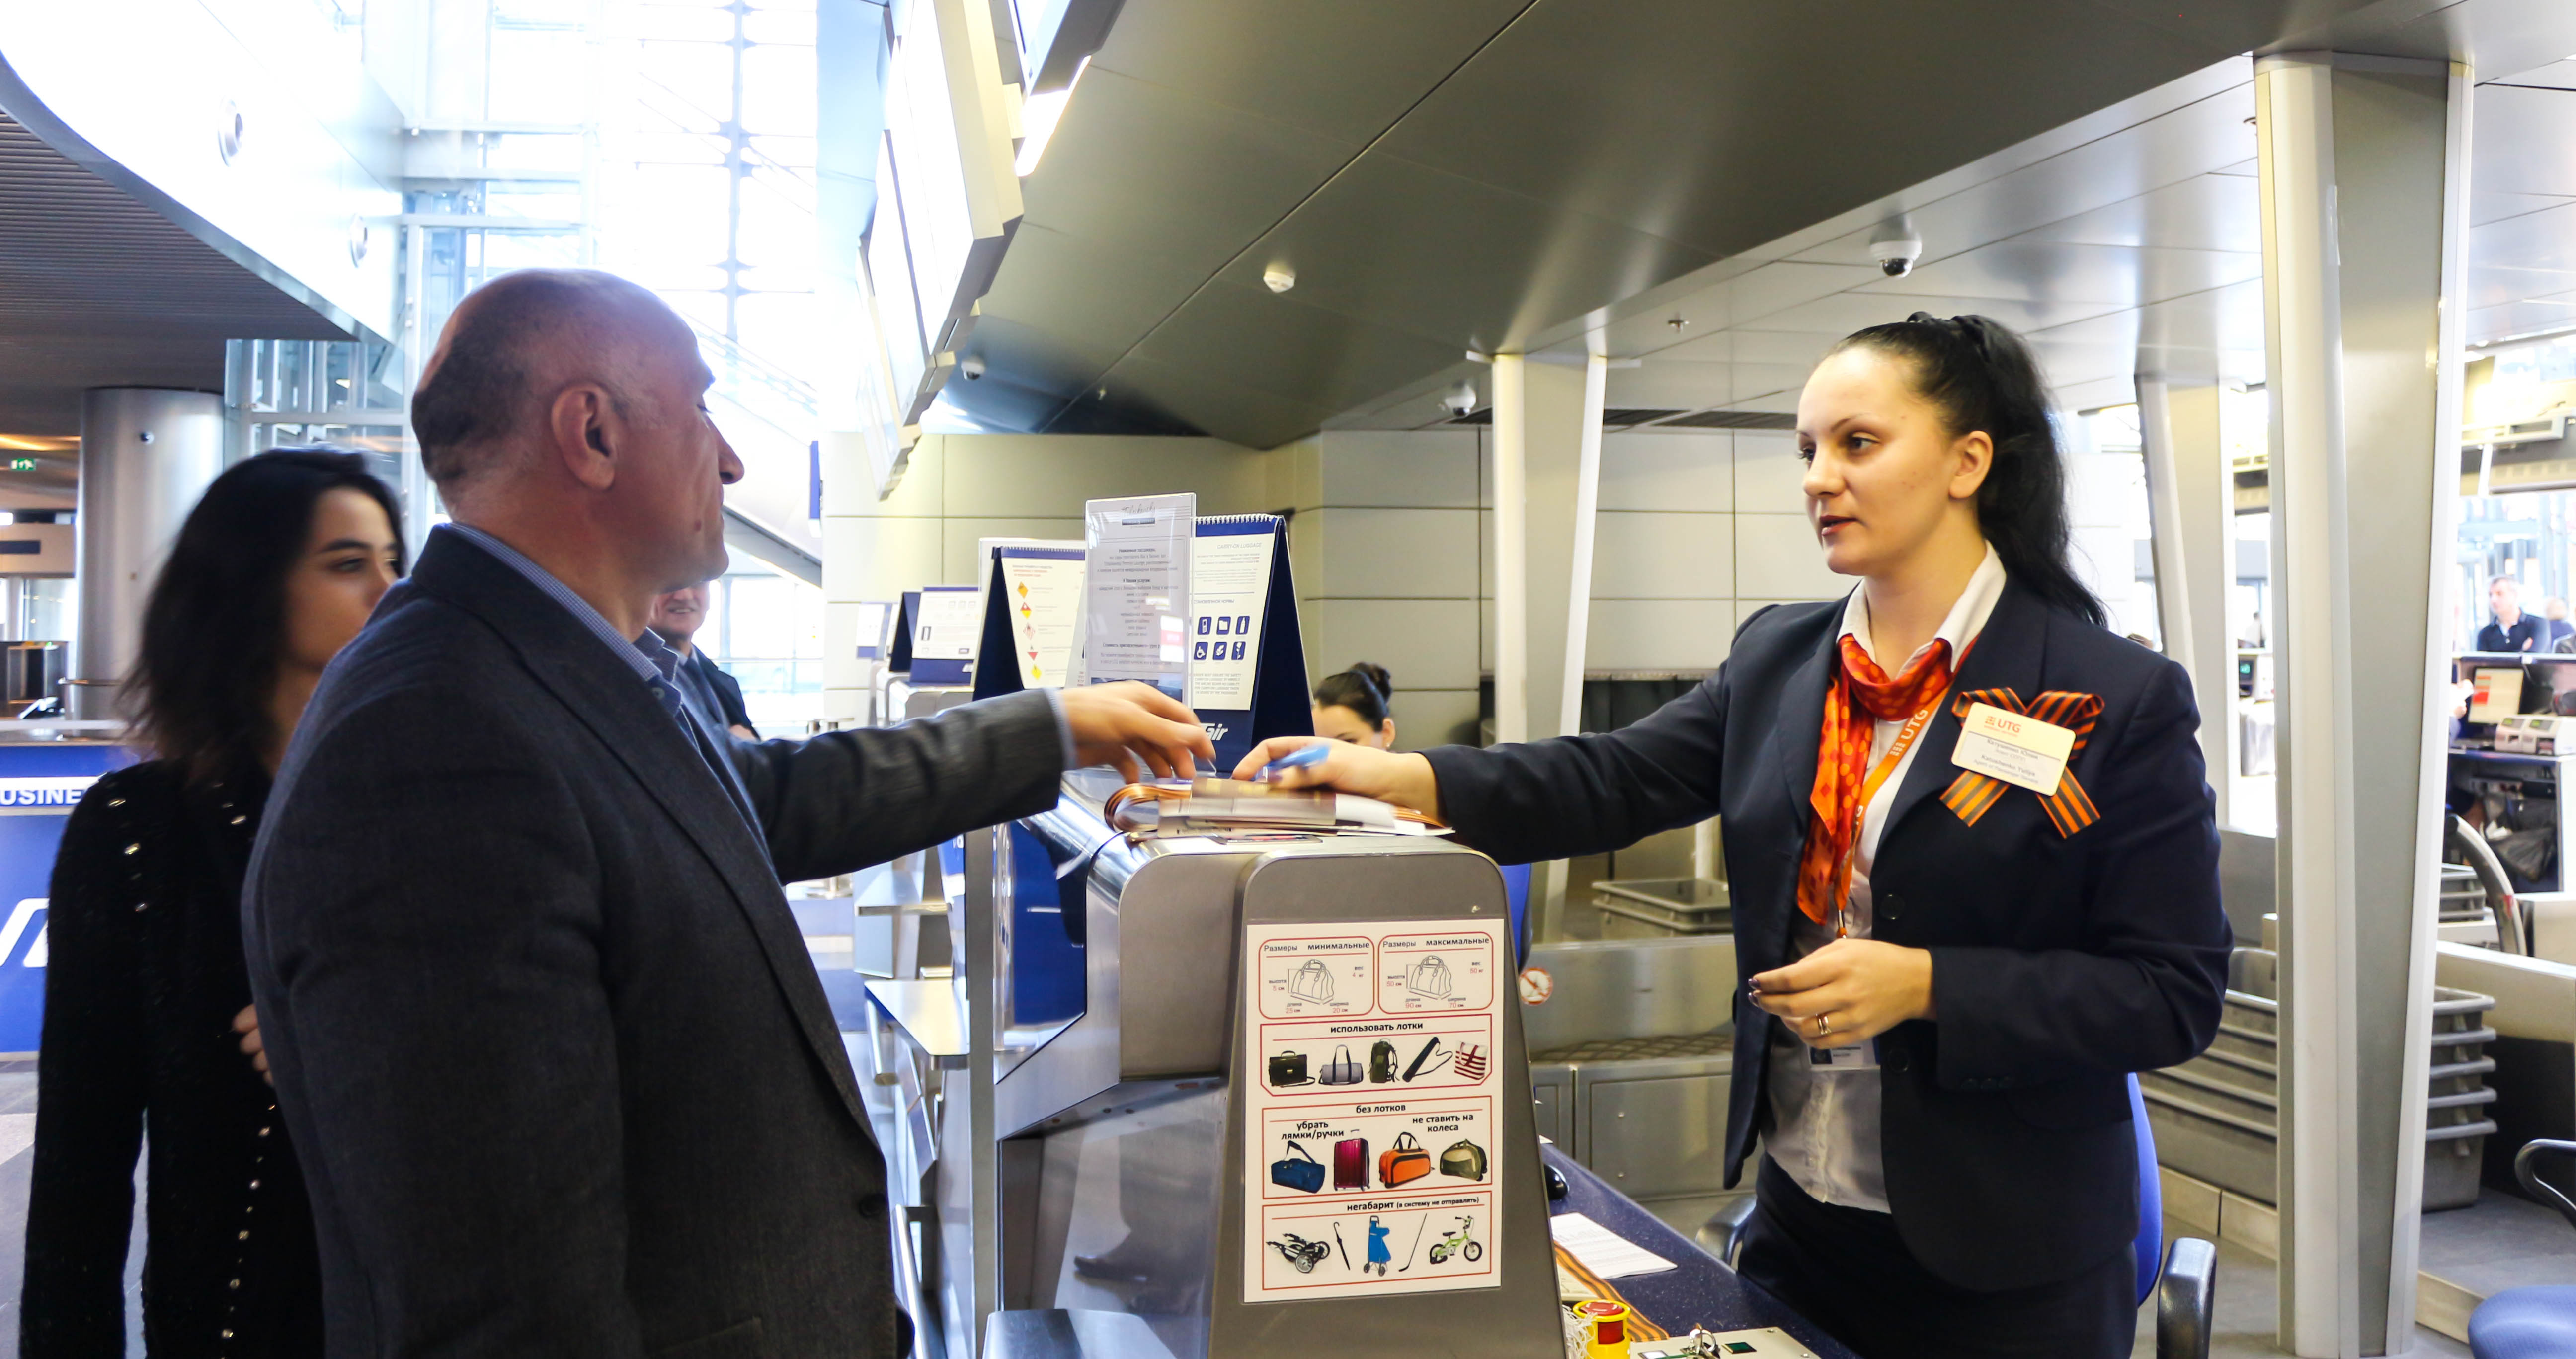 Аэропорт Внуково принимает участие в акции «Я помню! Я горжусь!» | Международный аэропорт Внуково